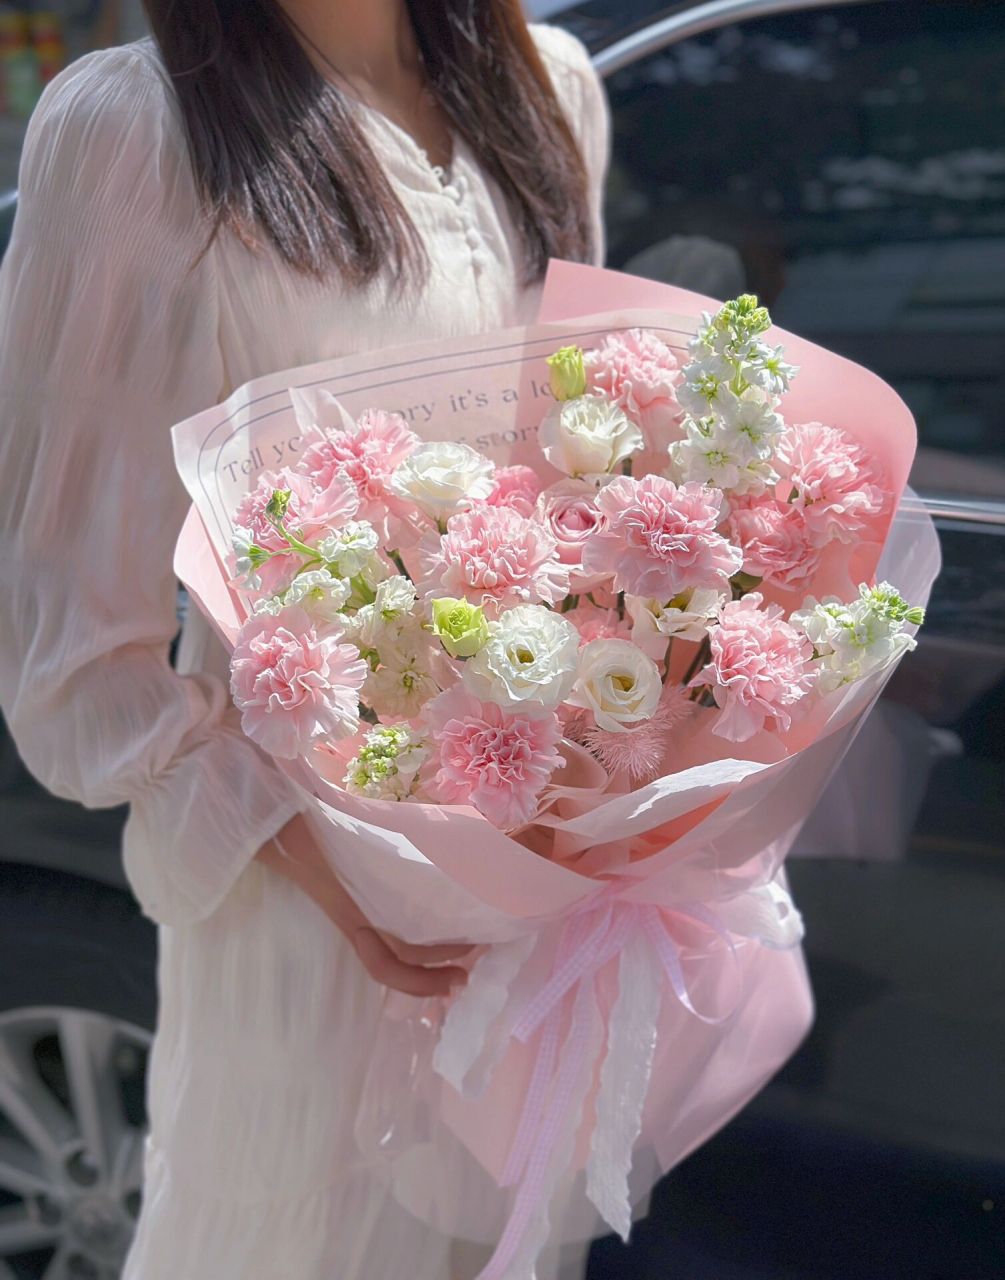 母亲节康乃馨花束 这世界的浪漫与鲜花记得给妈妈一份